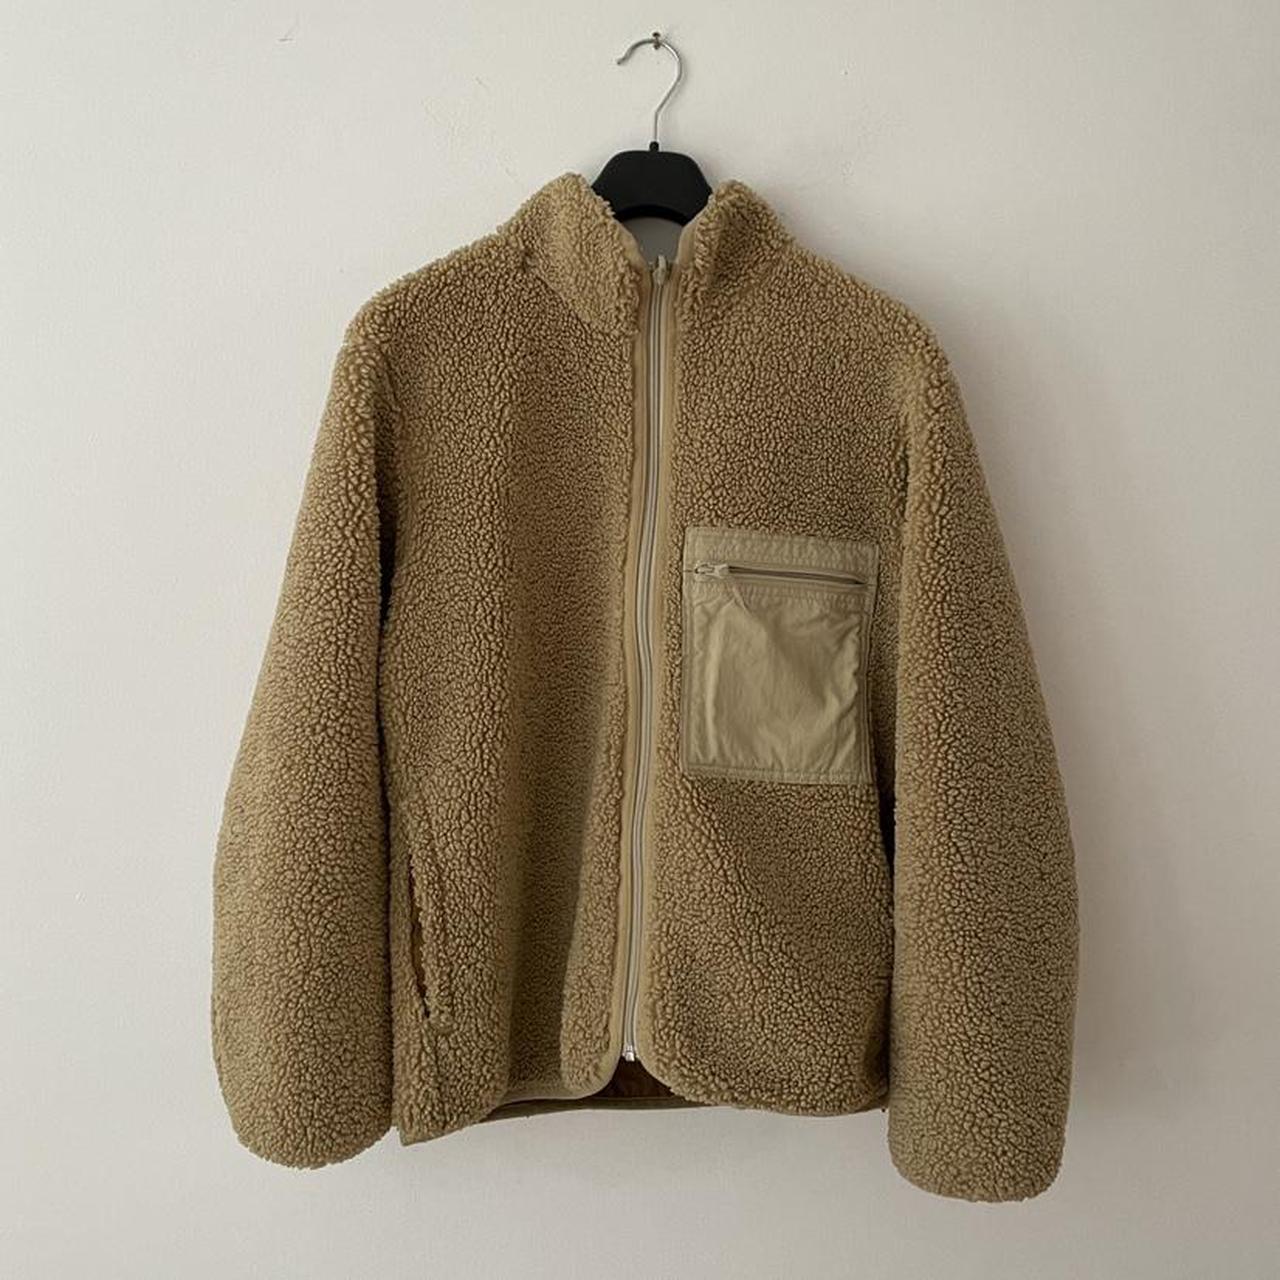 Uniqlo Pile-Lined Reversible Sherpa Fleece Jacket (x... - Depop